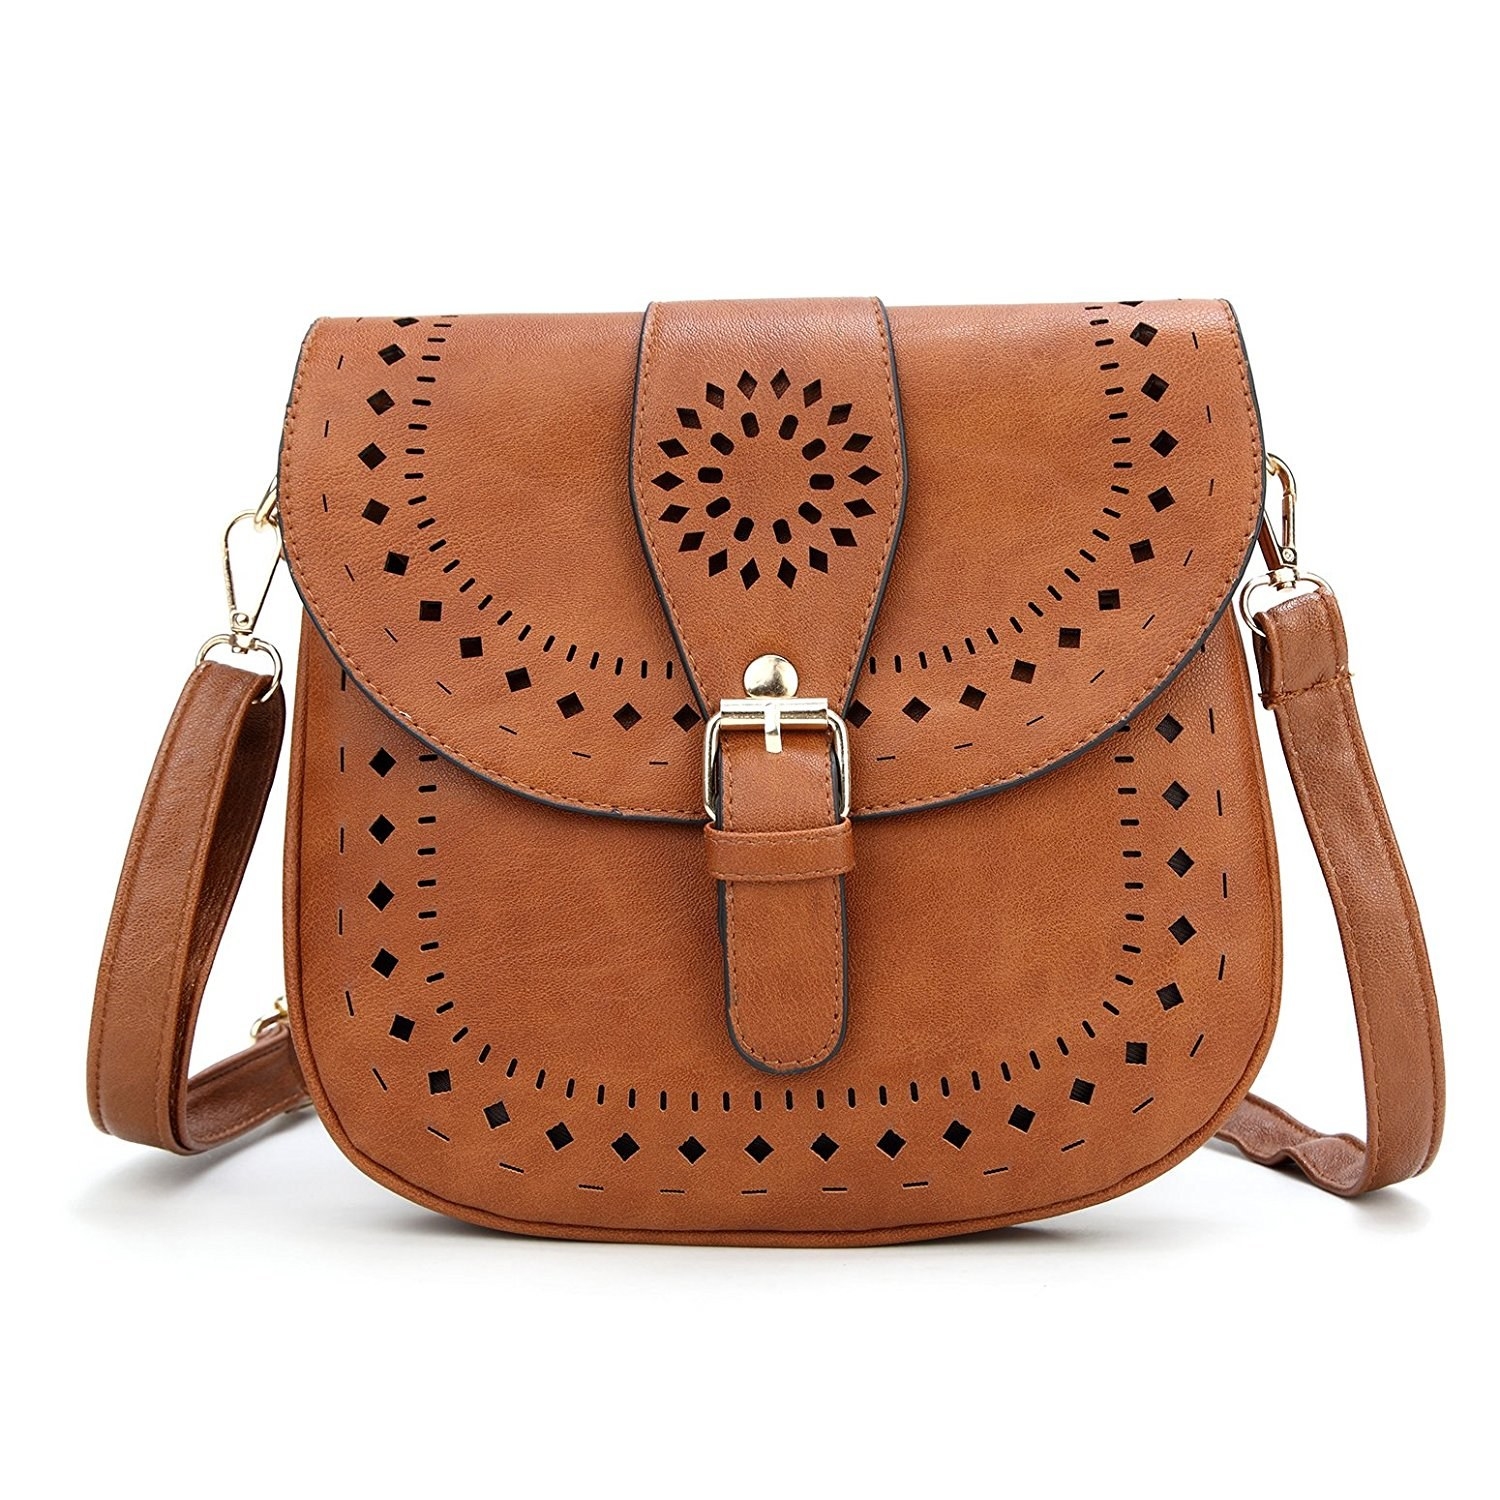 Sell Vintage Handbags Online | semashow.com